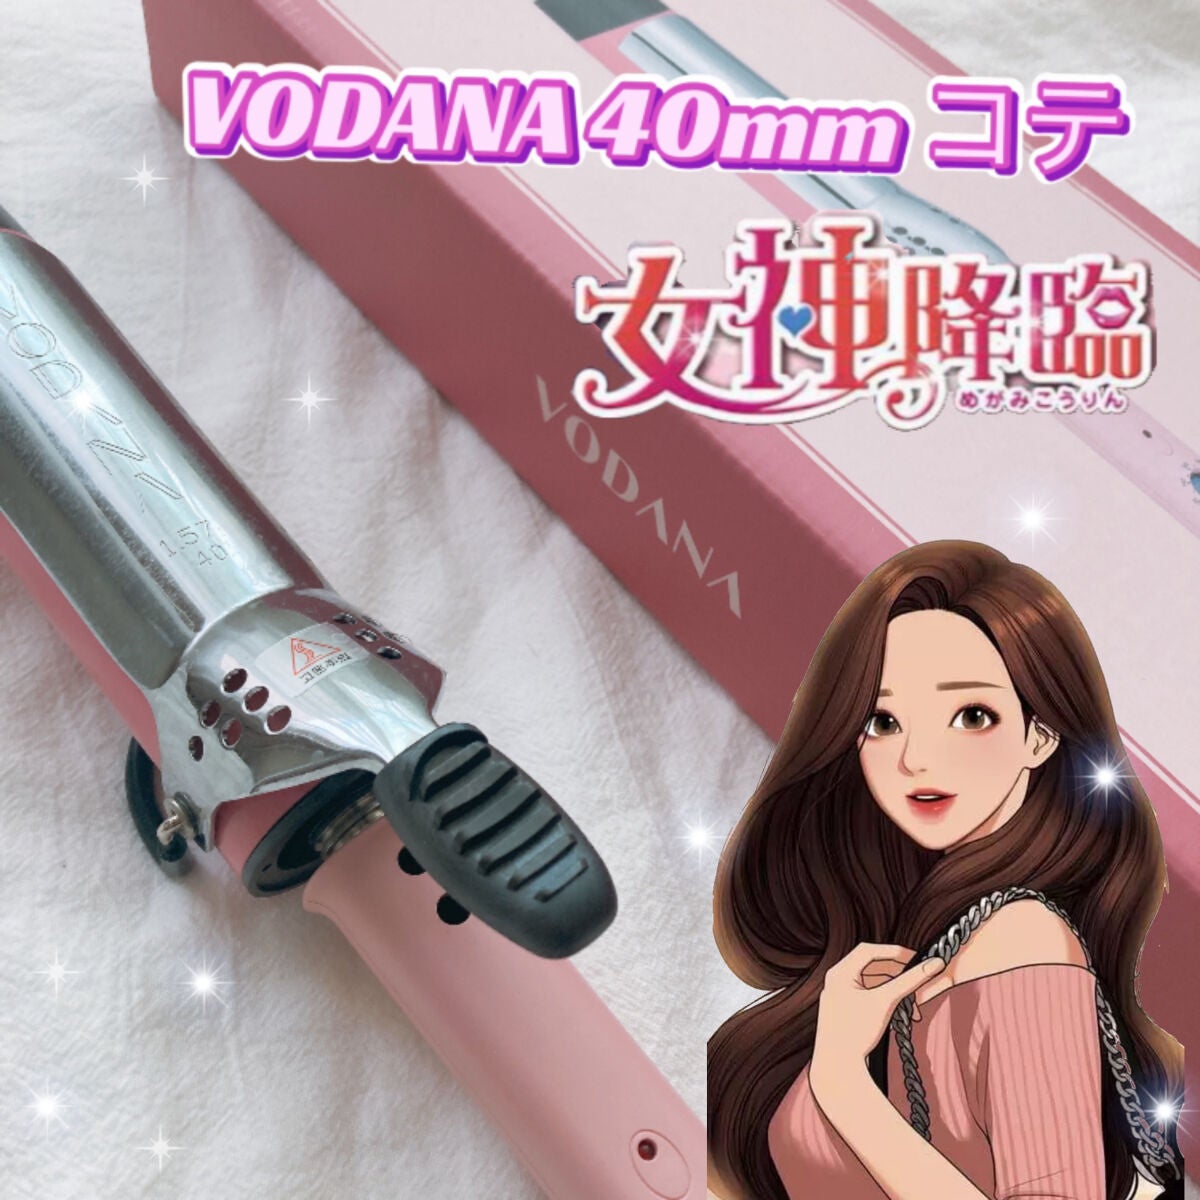 【Aceさま専用】VODANA ヘアアイロン40mm